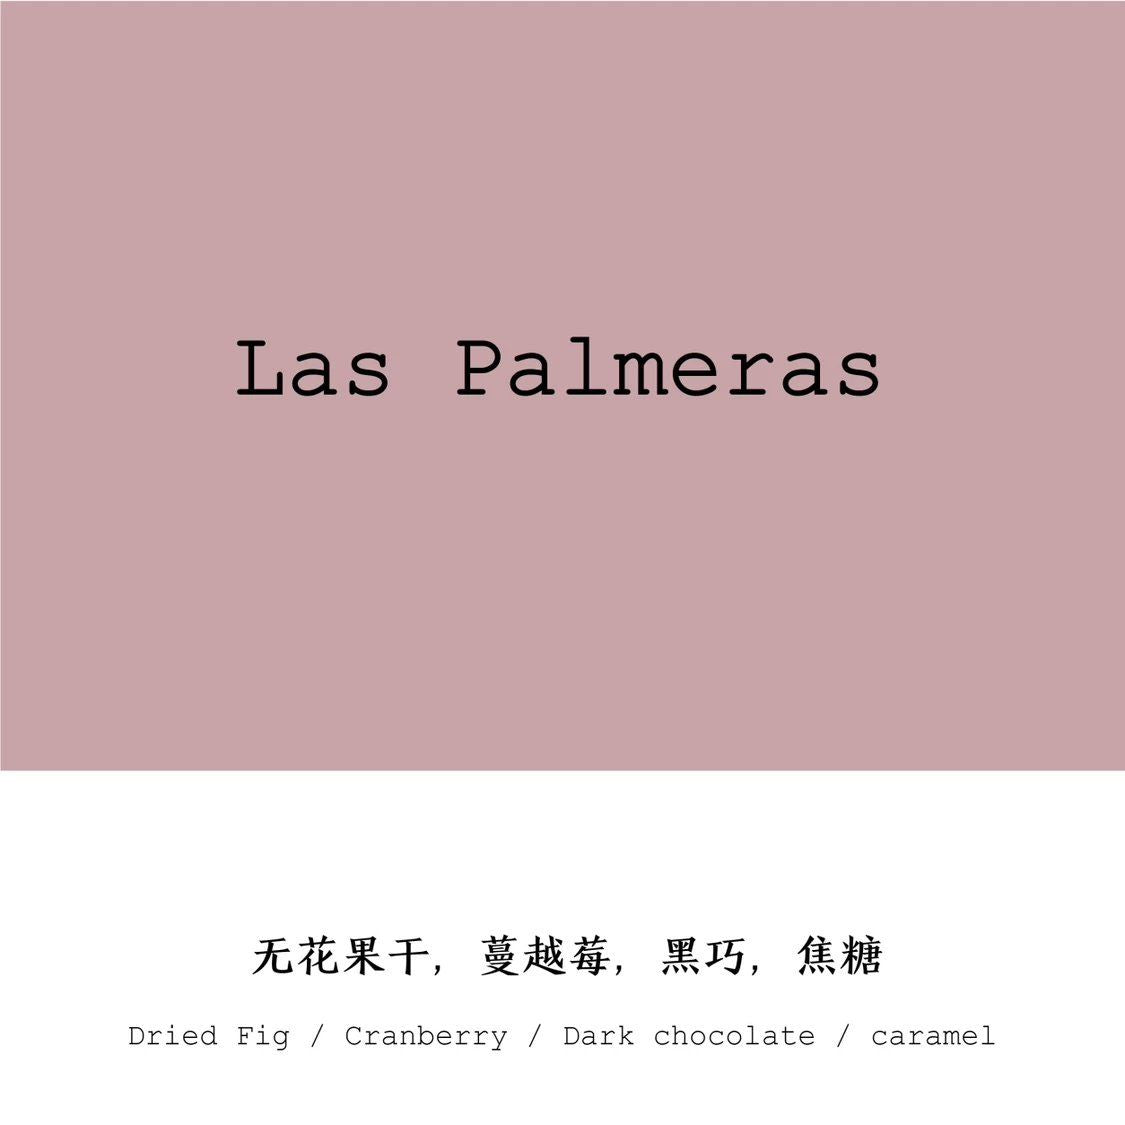 COLOMBIA - LAS PALMERAS